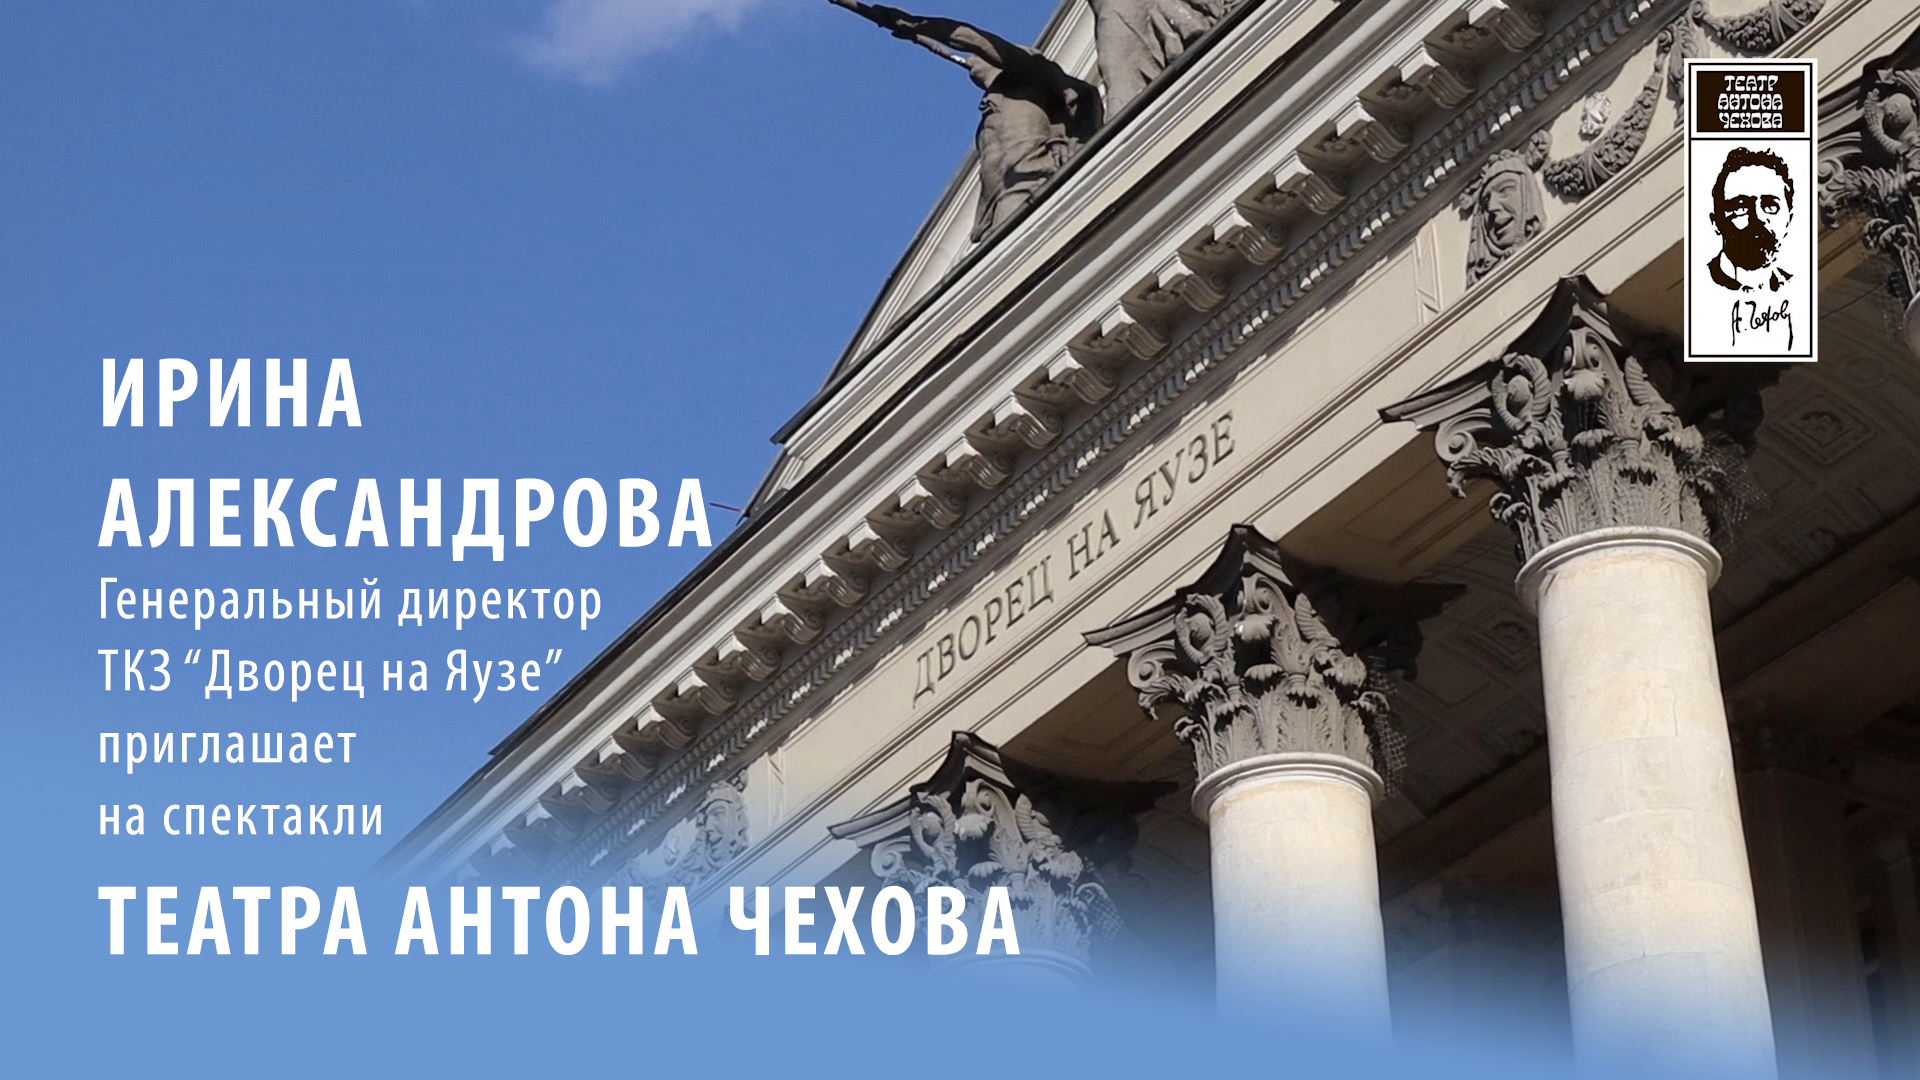 Приглашение в «Театр Антона Чехова» от директора Дворца на Яузе